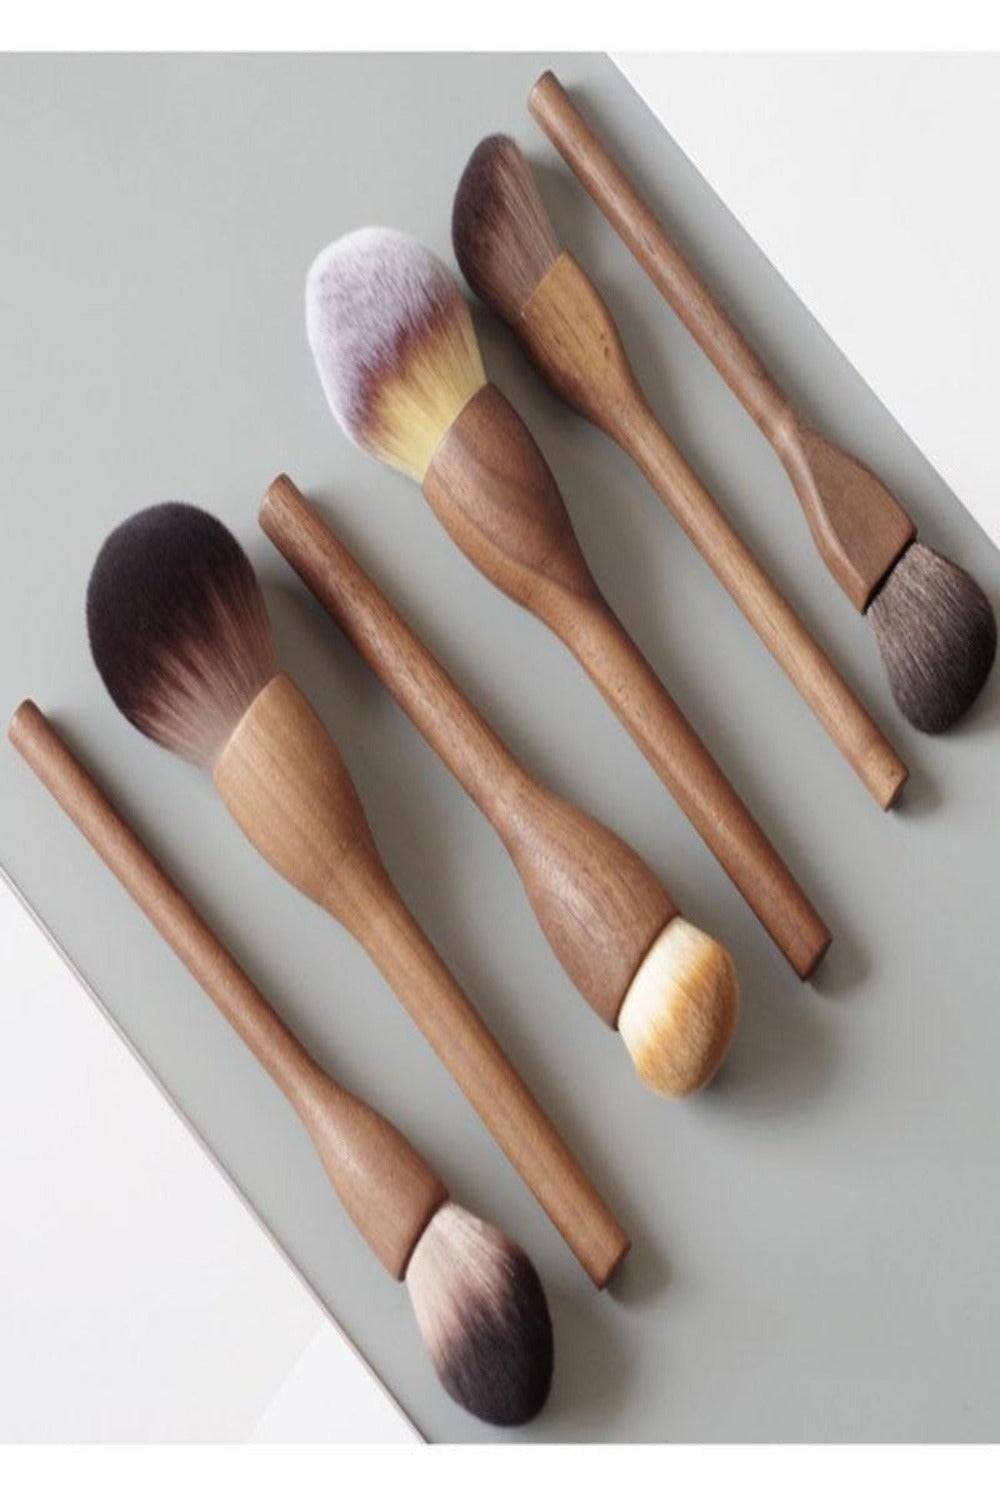 European Vintage Wood Loose Powder Makeup Brush Set - TGC Boutique - Makeup Brush Set